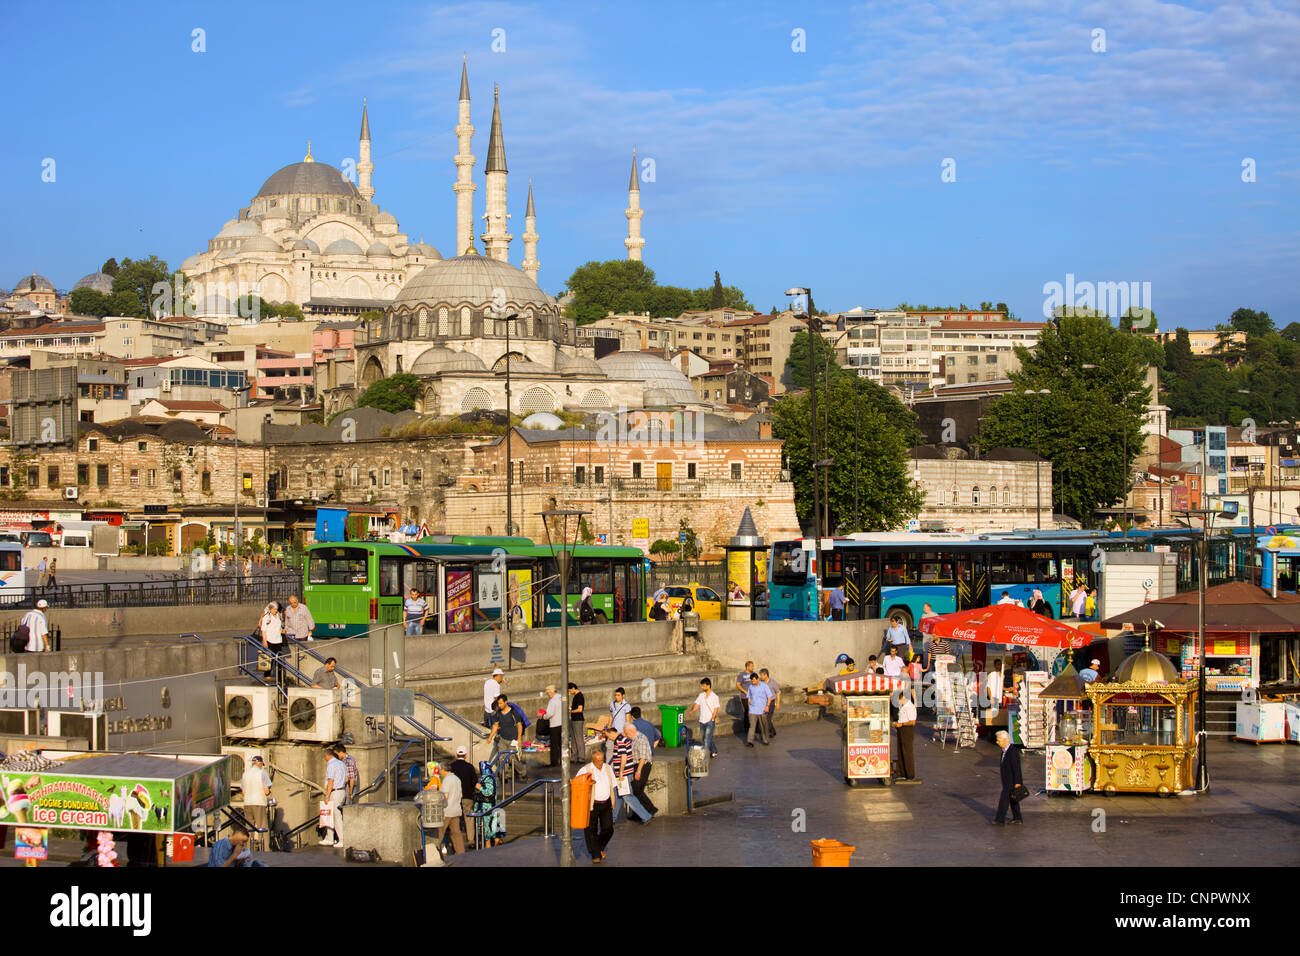 Leben in der Stadt im historischen Stadtteil von Istanbul mit Süleymaniye-Moschee am Ende in der Türkei. Stockfoto